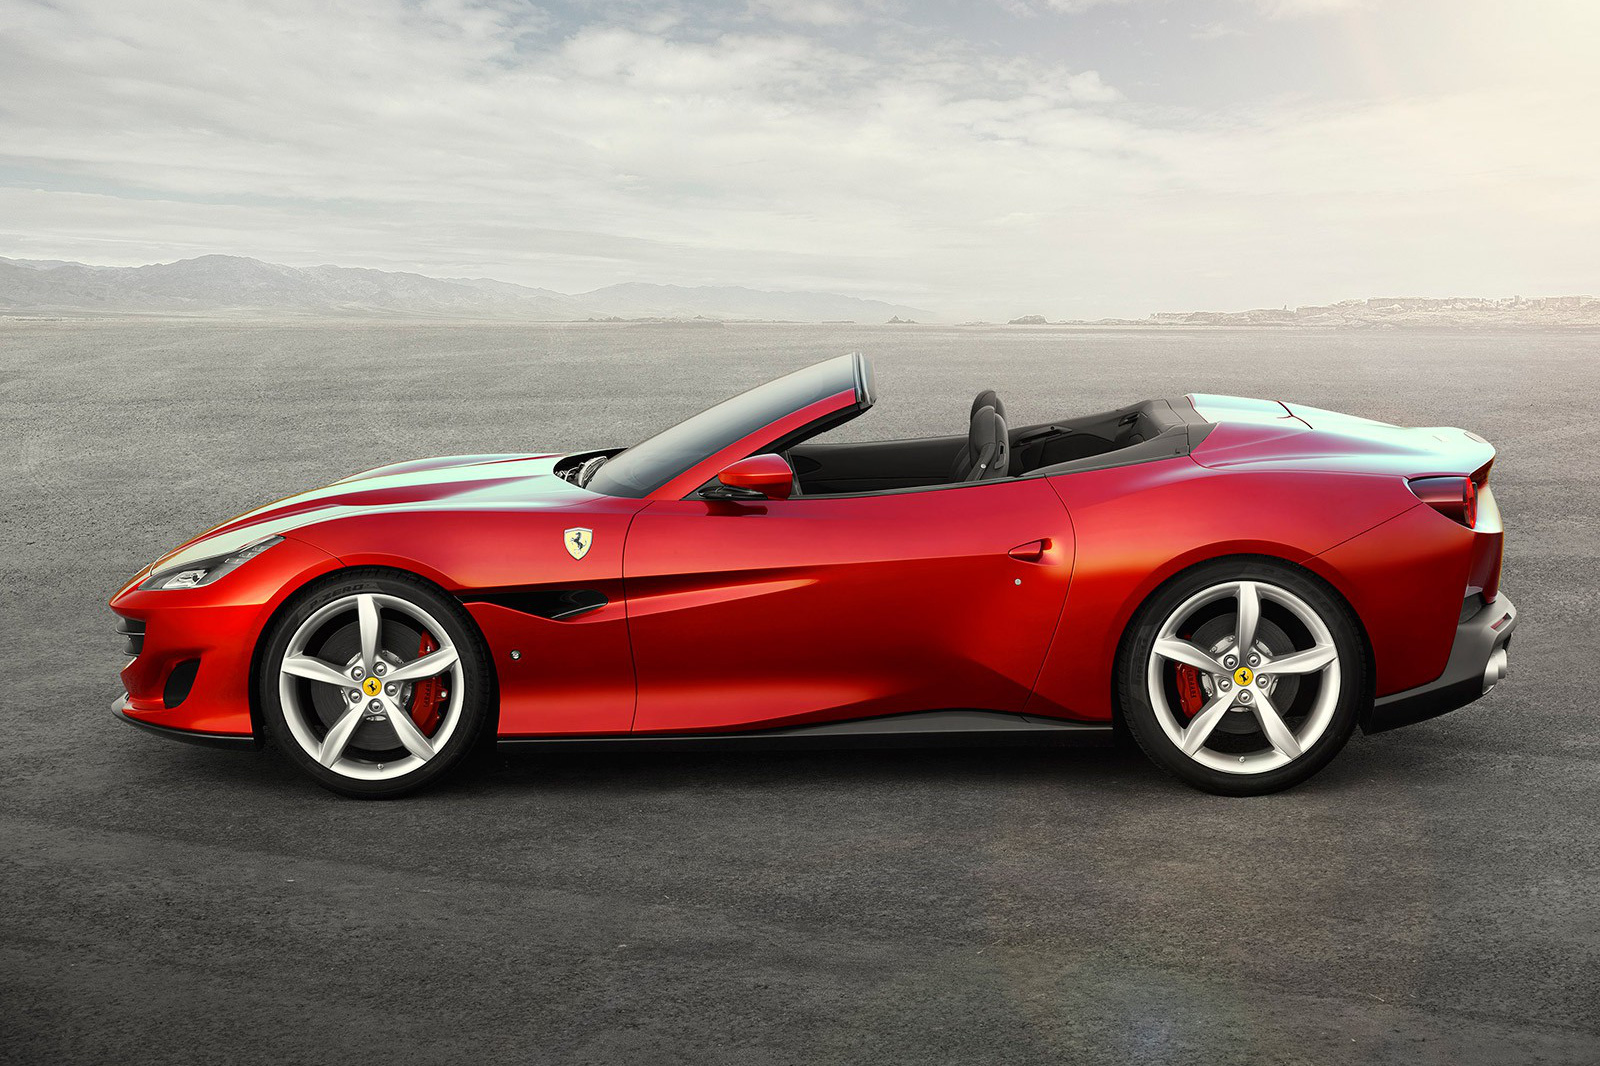 Sau khi nâng cấp, siêu xe Ferrari Portofino chỉ tiêu thụ hơn 12 lít xăng/100km